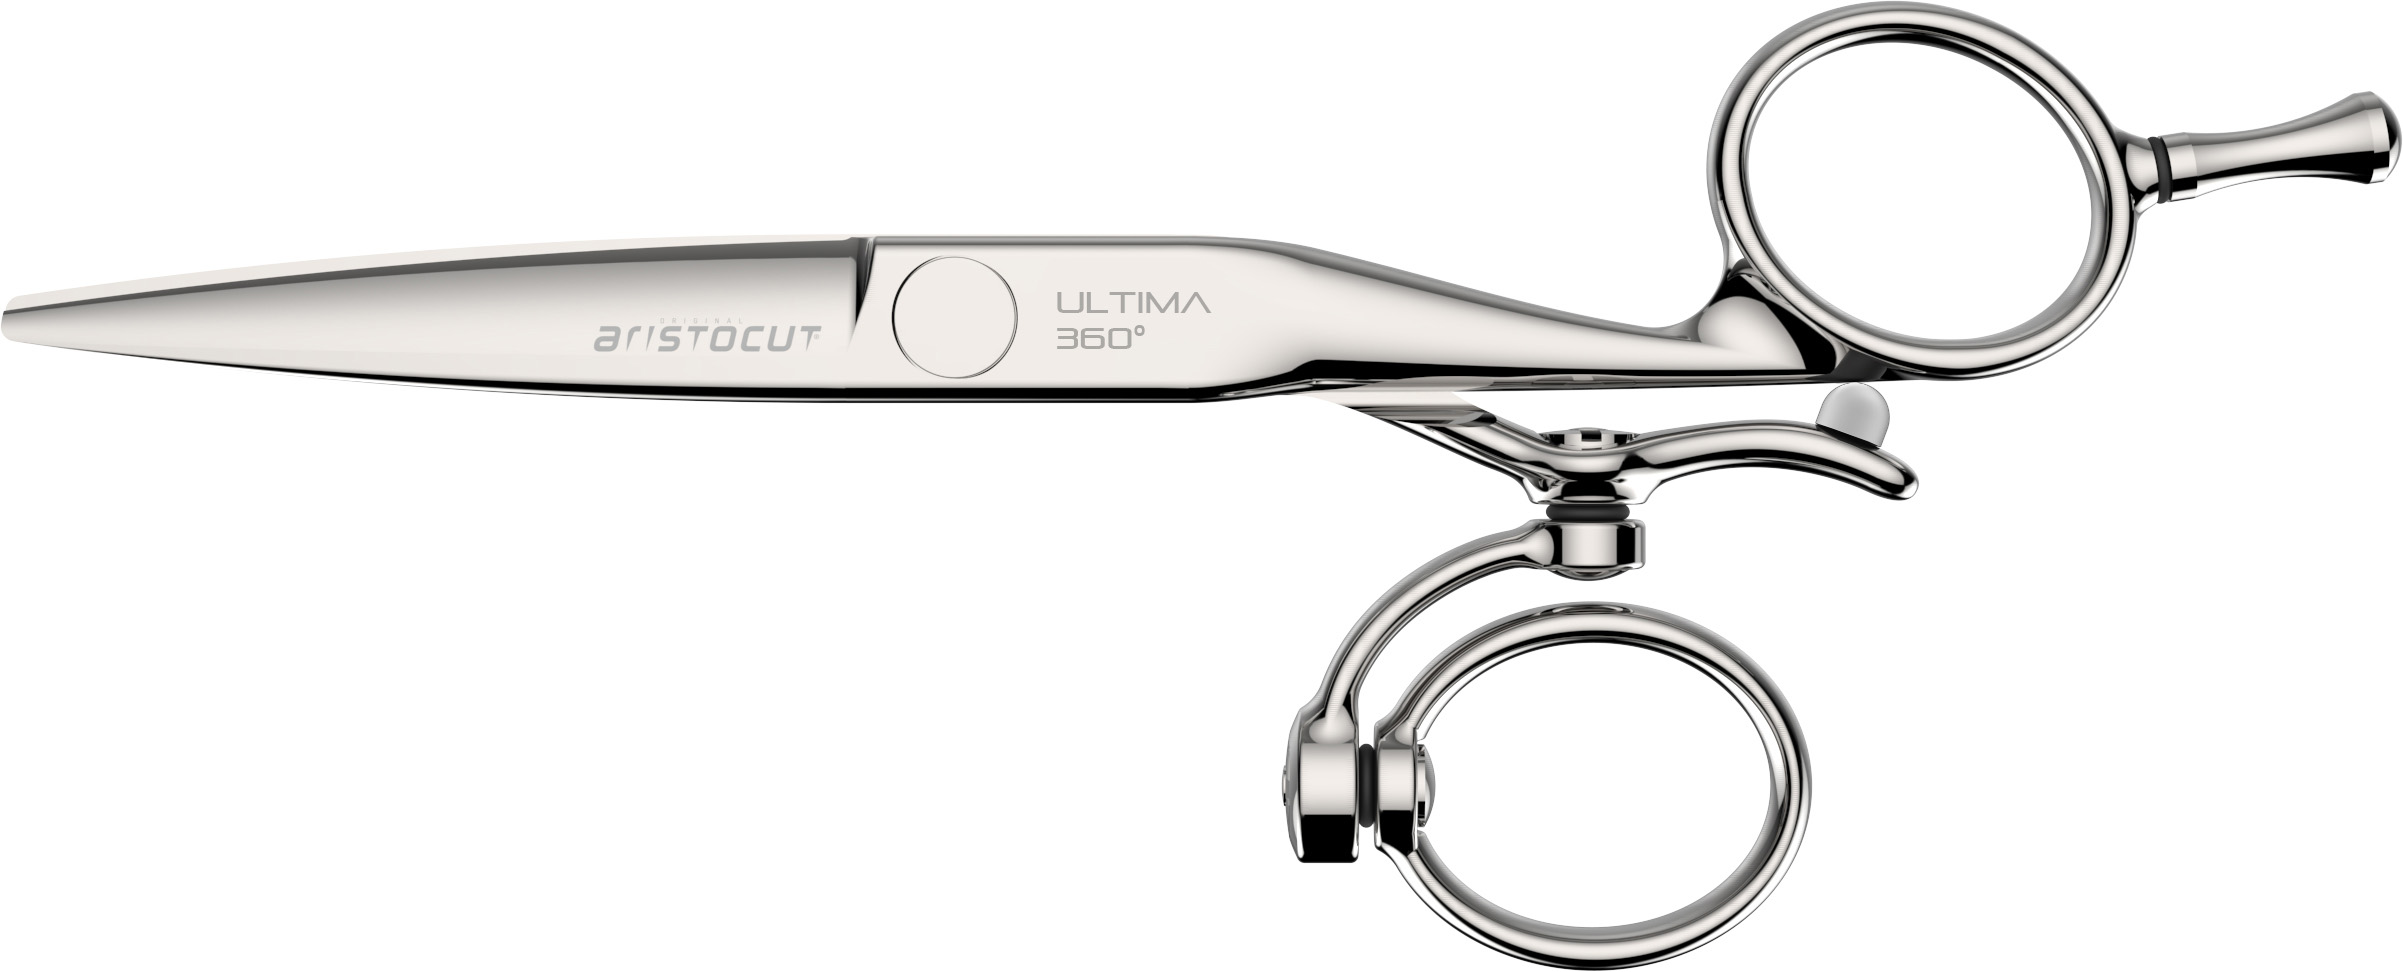 ULTIMA 360° Hair cutting scissors